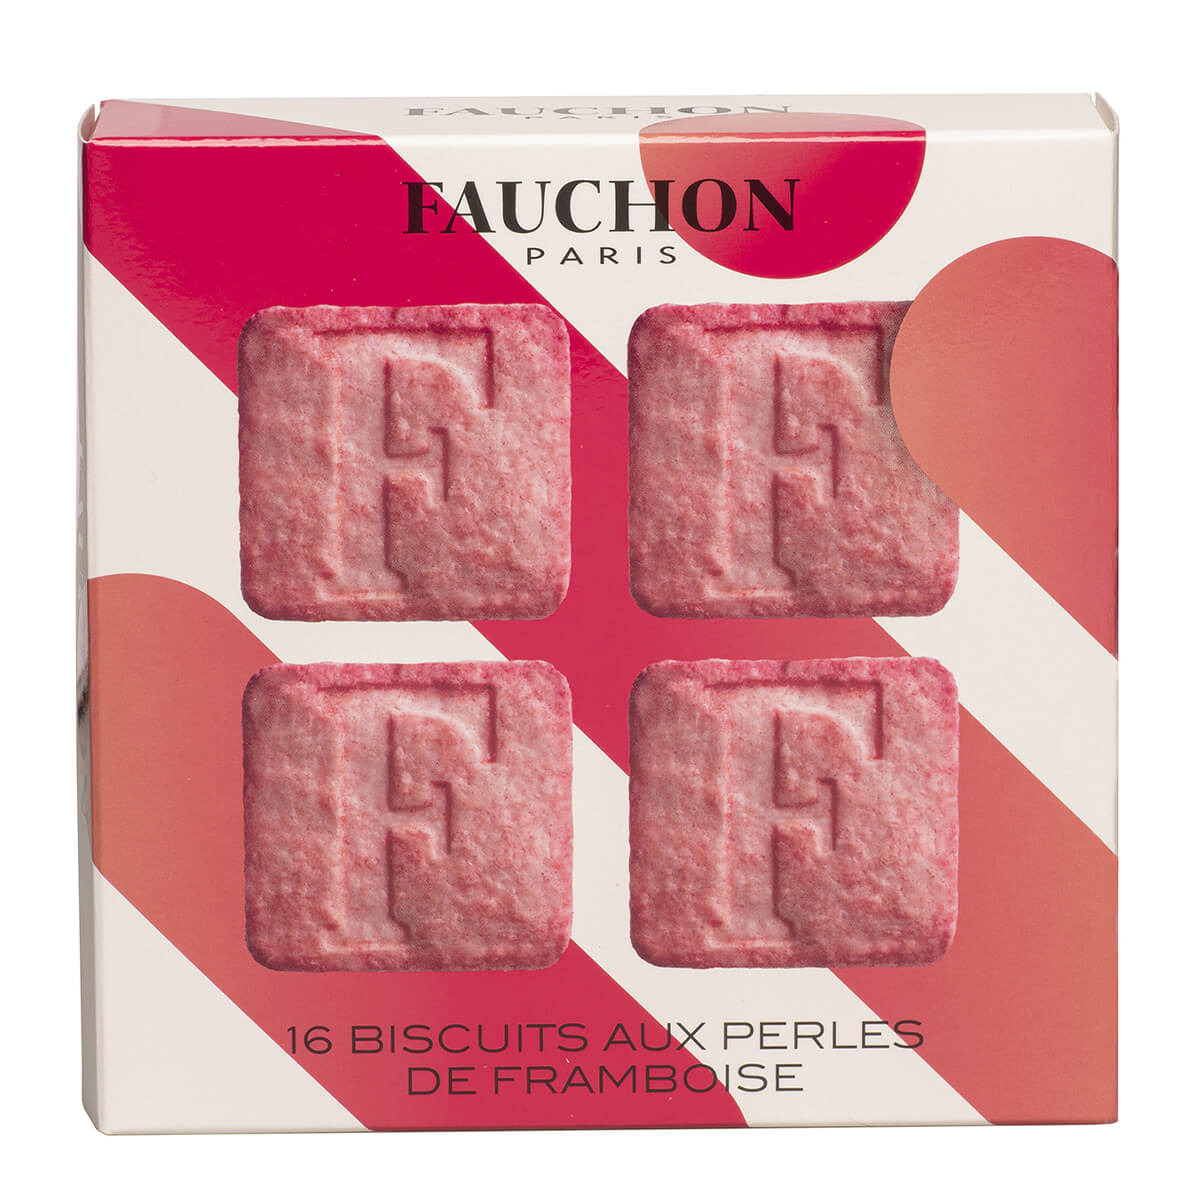 Delicatessen - Our gourmet selection - FAUCHON